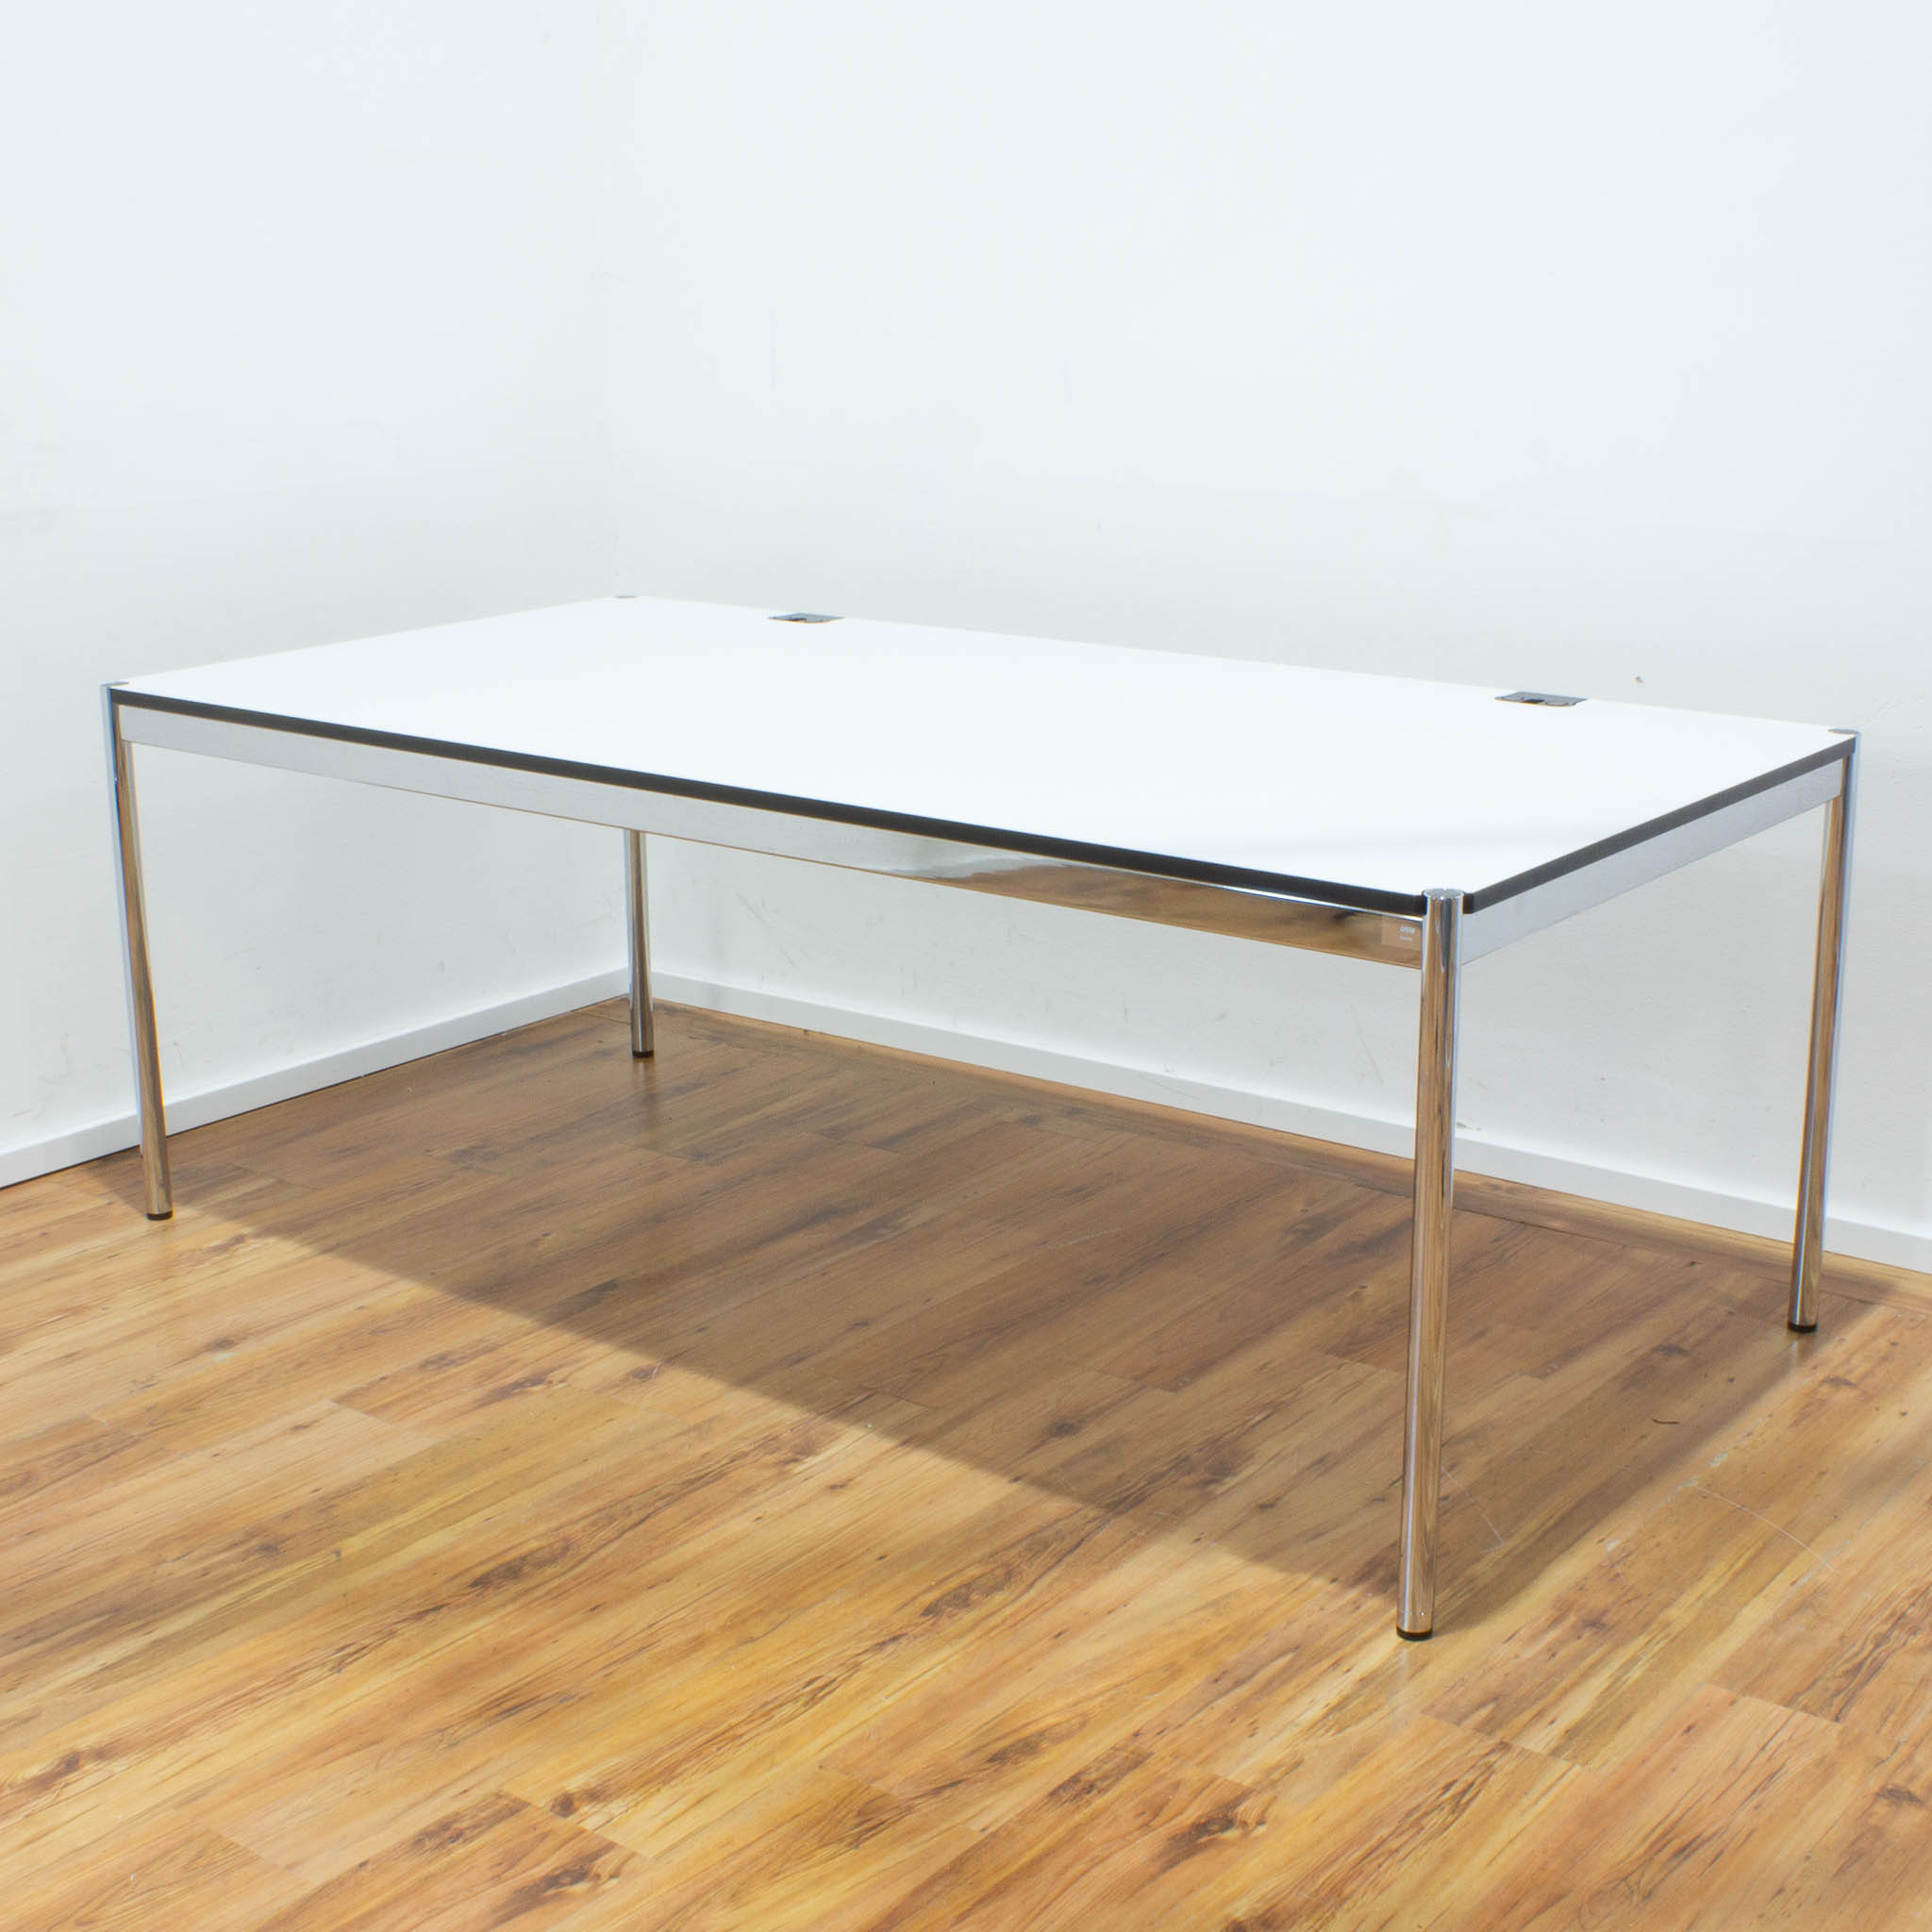 USM Haller Schreibtisch plus - Tischplatte weiß mit Kabeldurchlass - gebraucht - 200 x 100 cm 